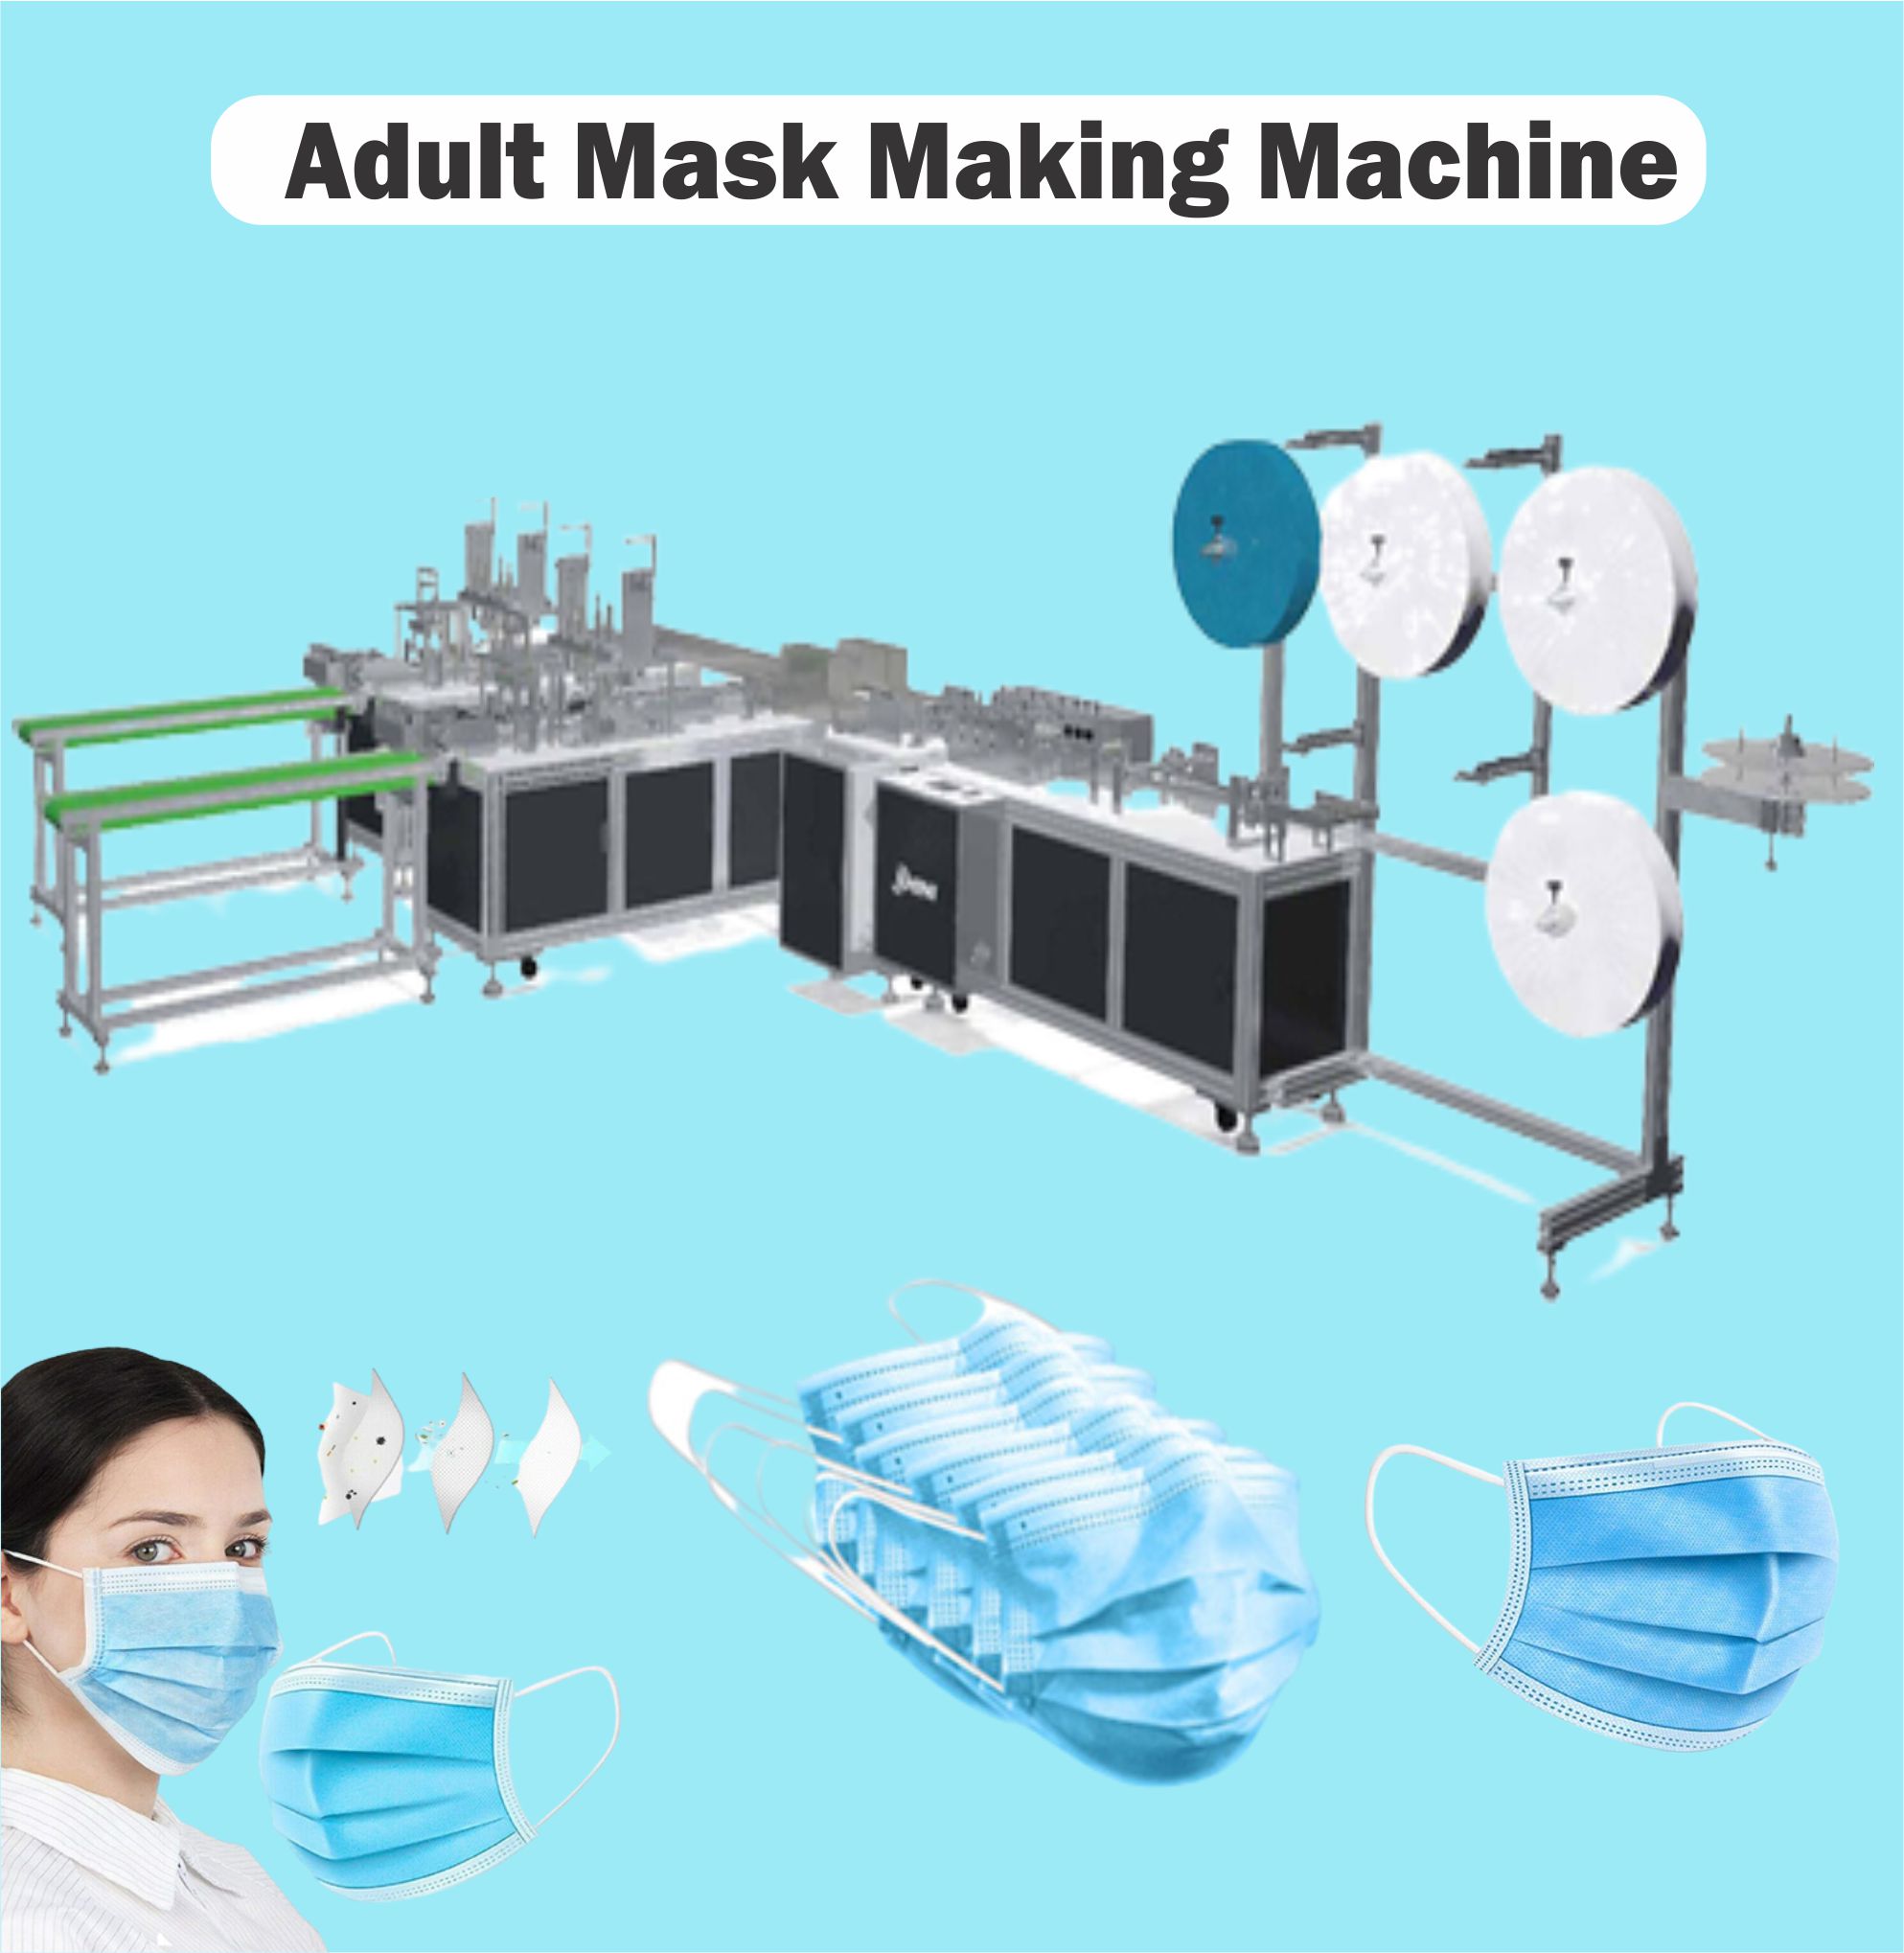 Adult Mask Making Machine